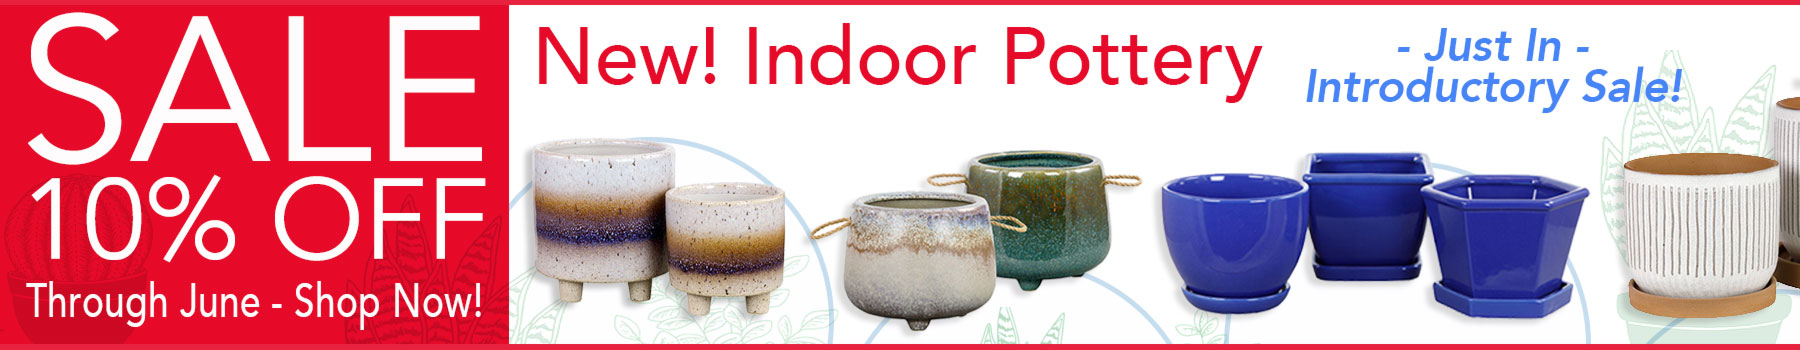 Sale!- 10% off through June -New Indoor Pottery